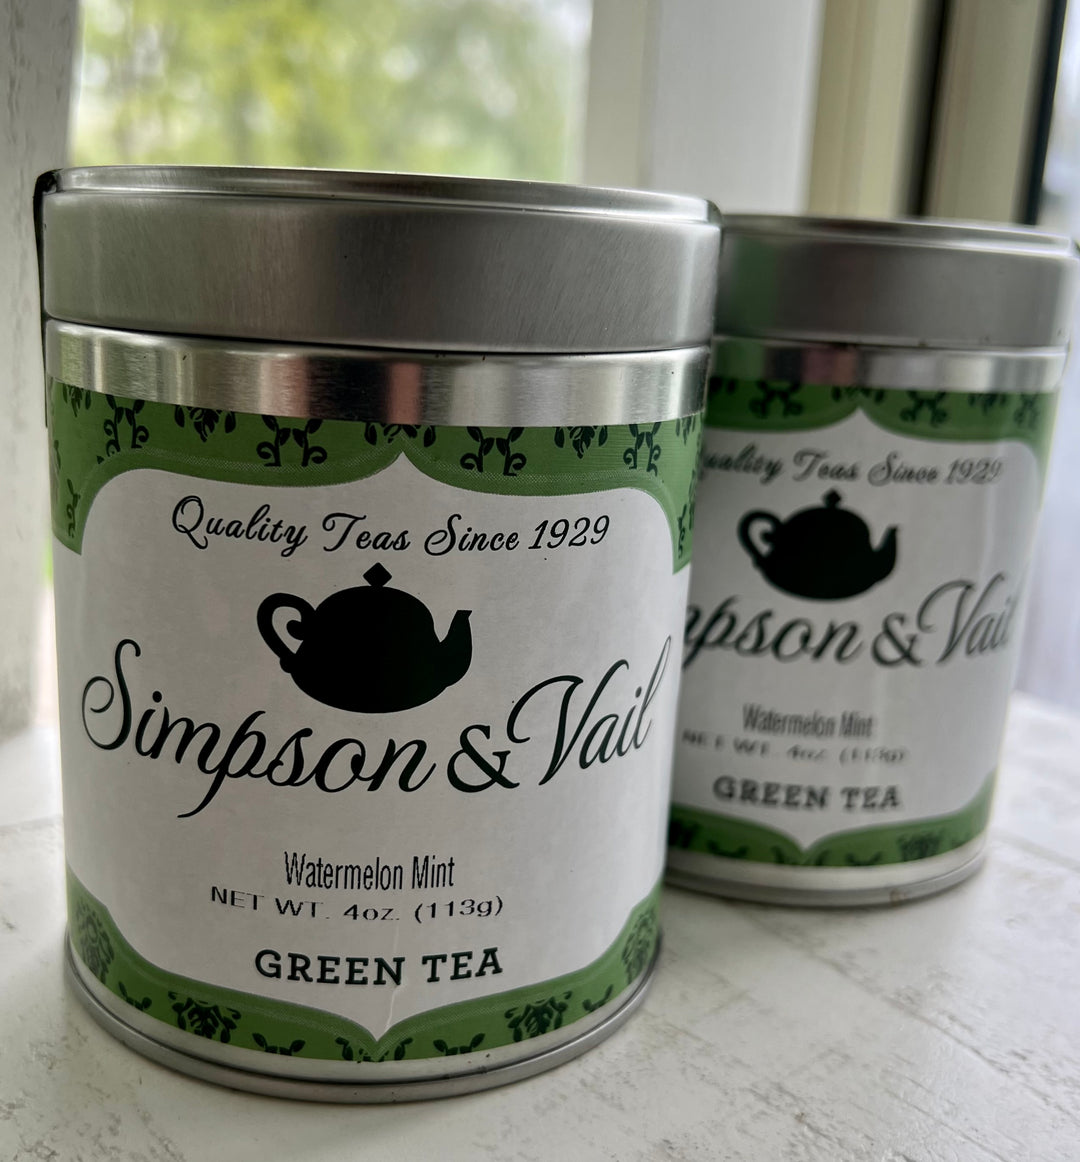 Watermelon Mint Green Tea, 4oz tin